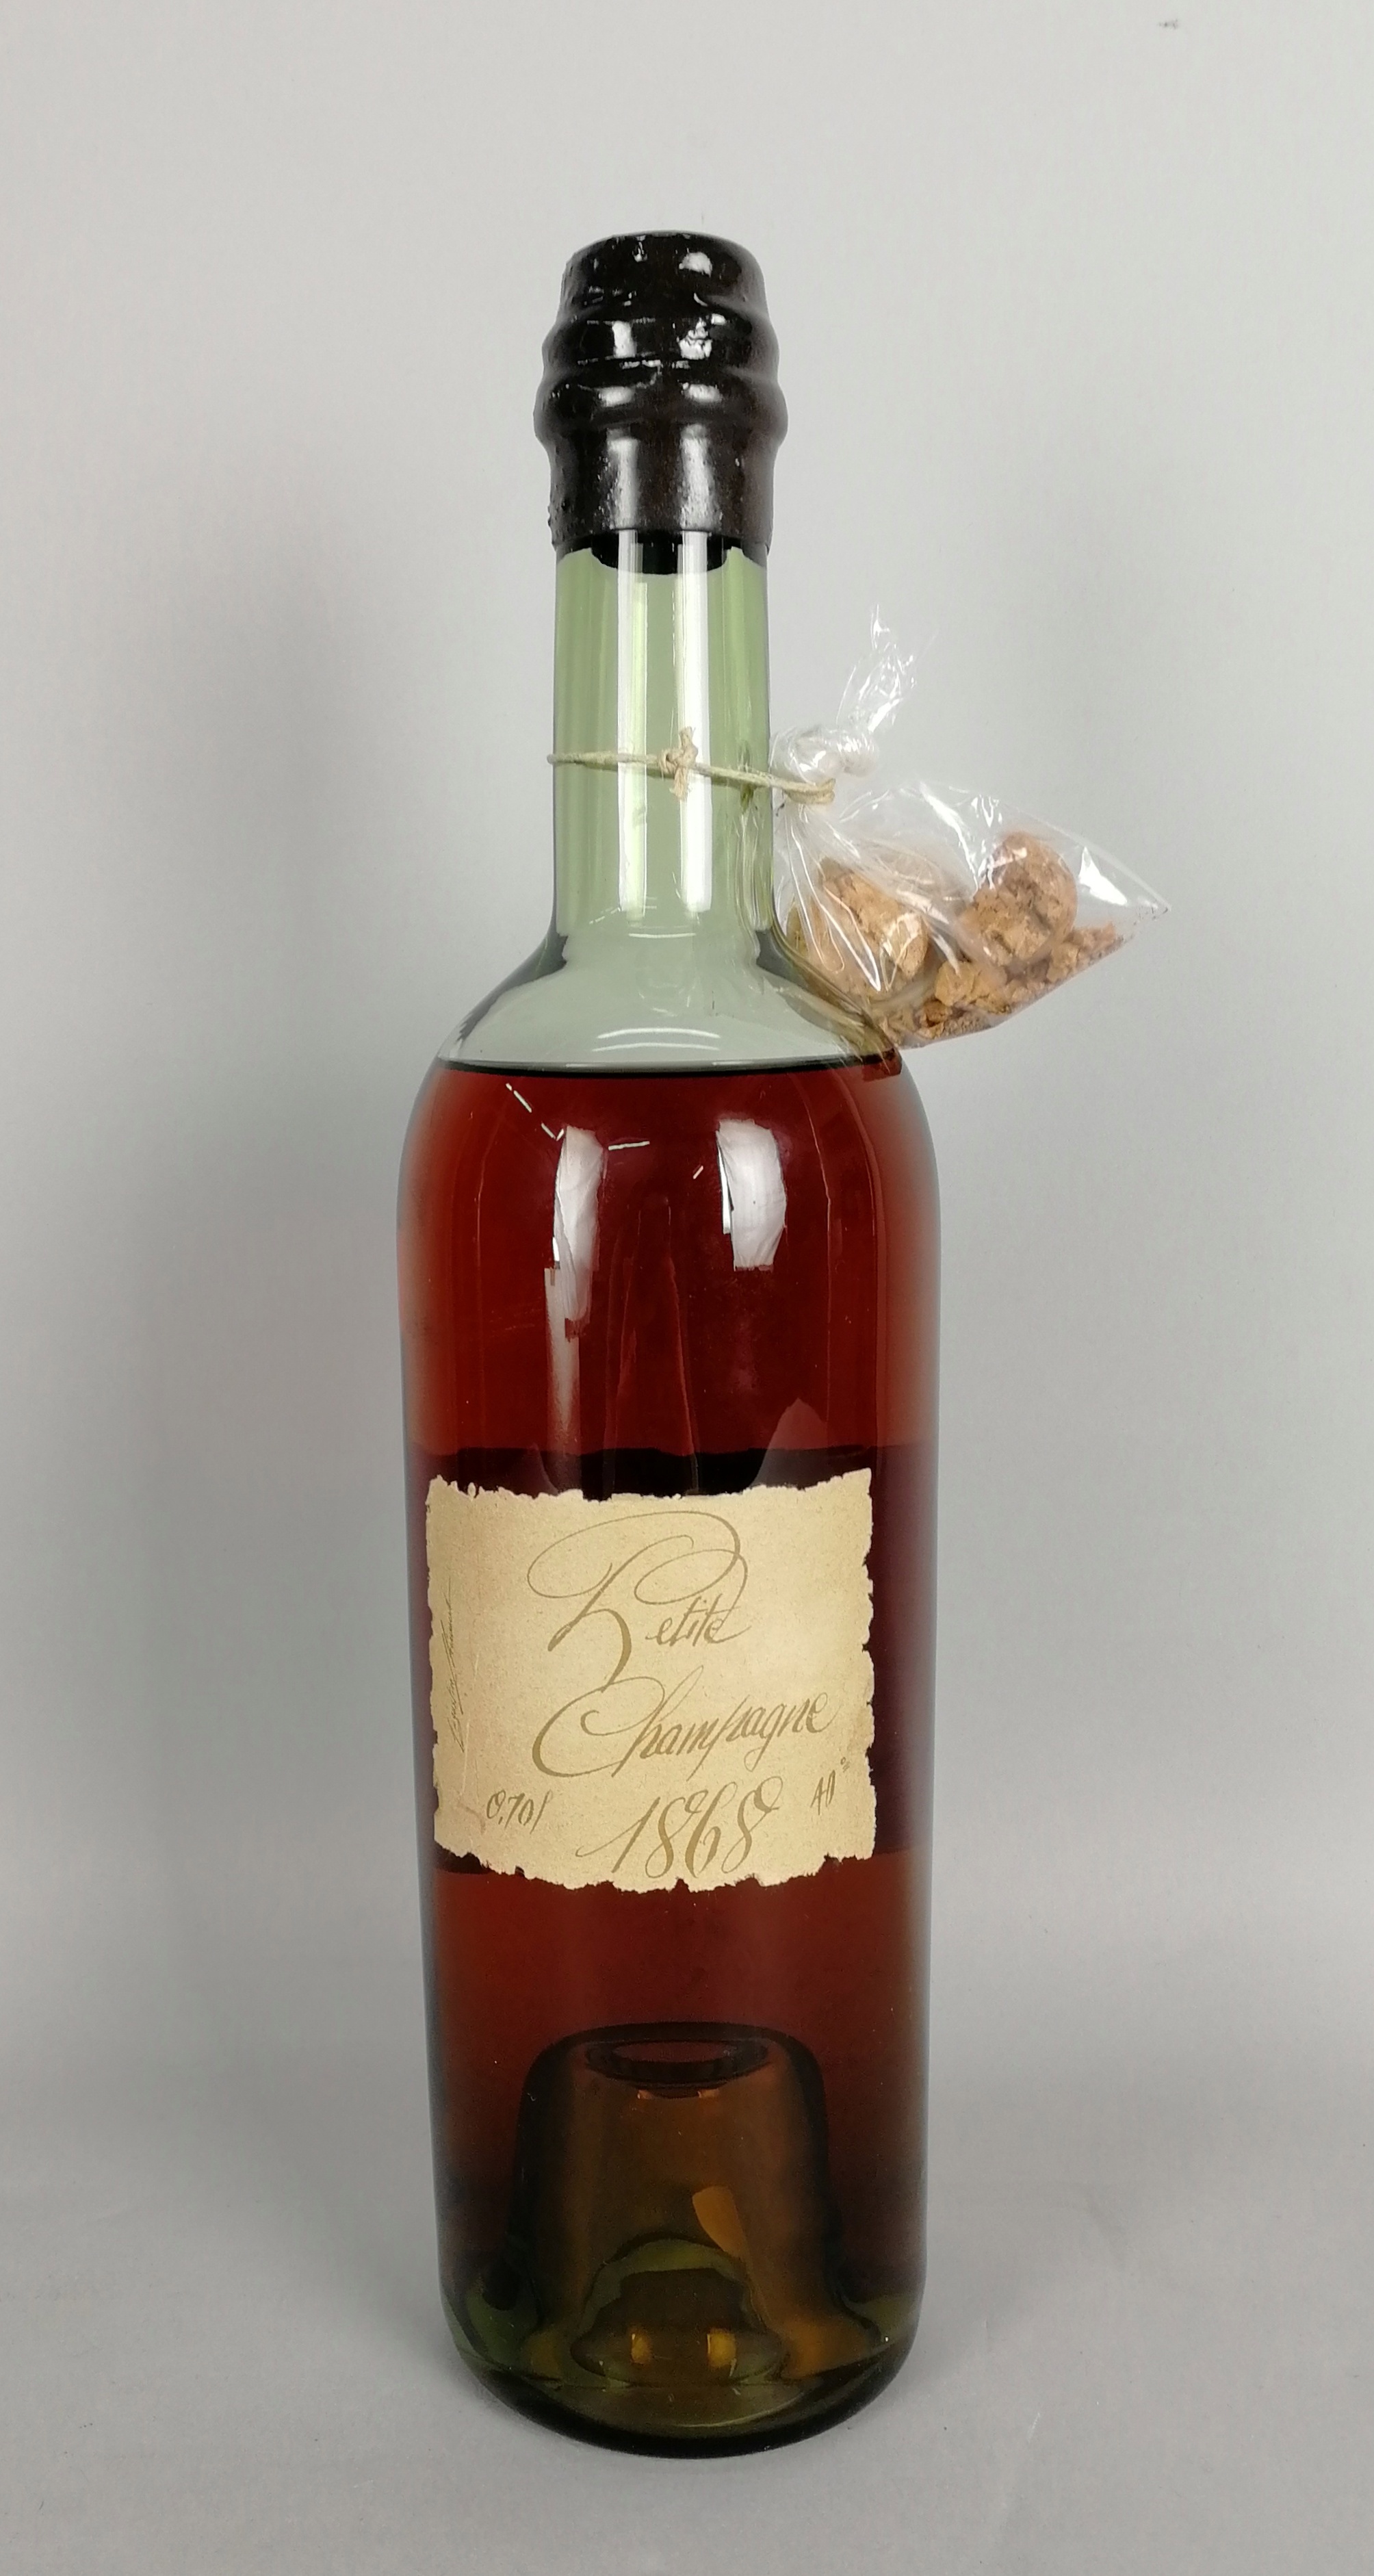 Cognac CHARLES LHERAUD - Domaine de Lasdoux, Petite Champagne, Vintage 1868. Imbottigliamento